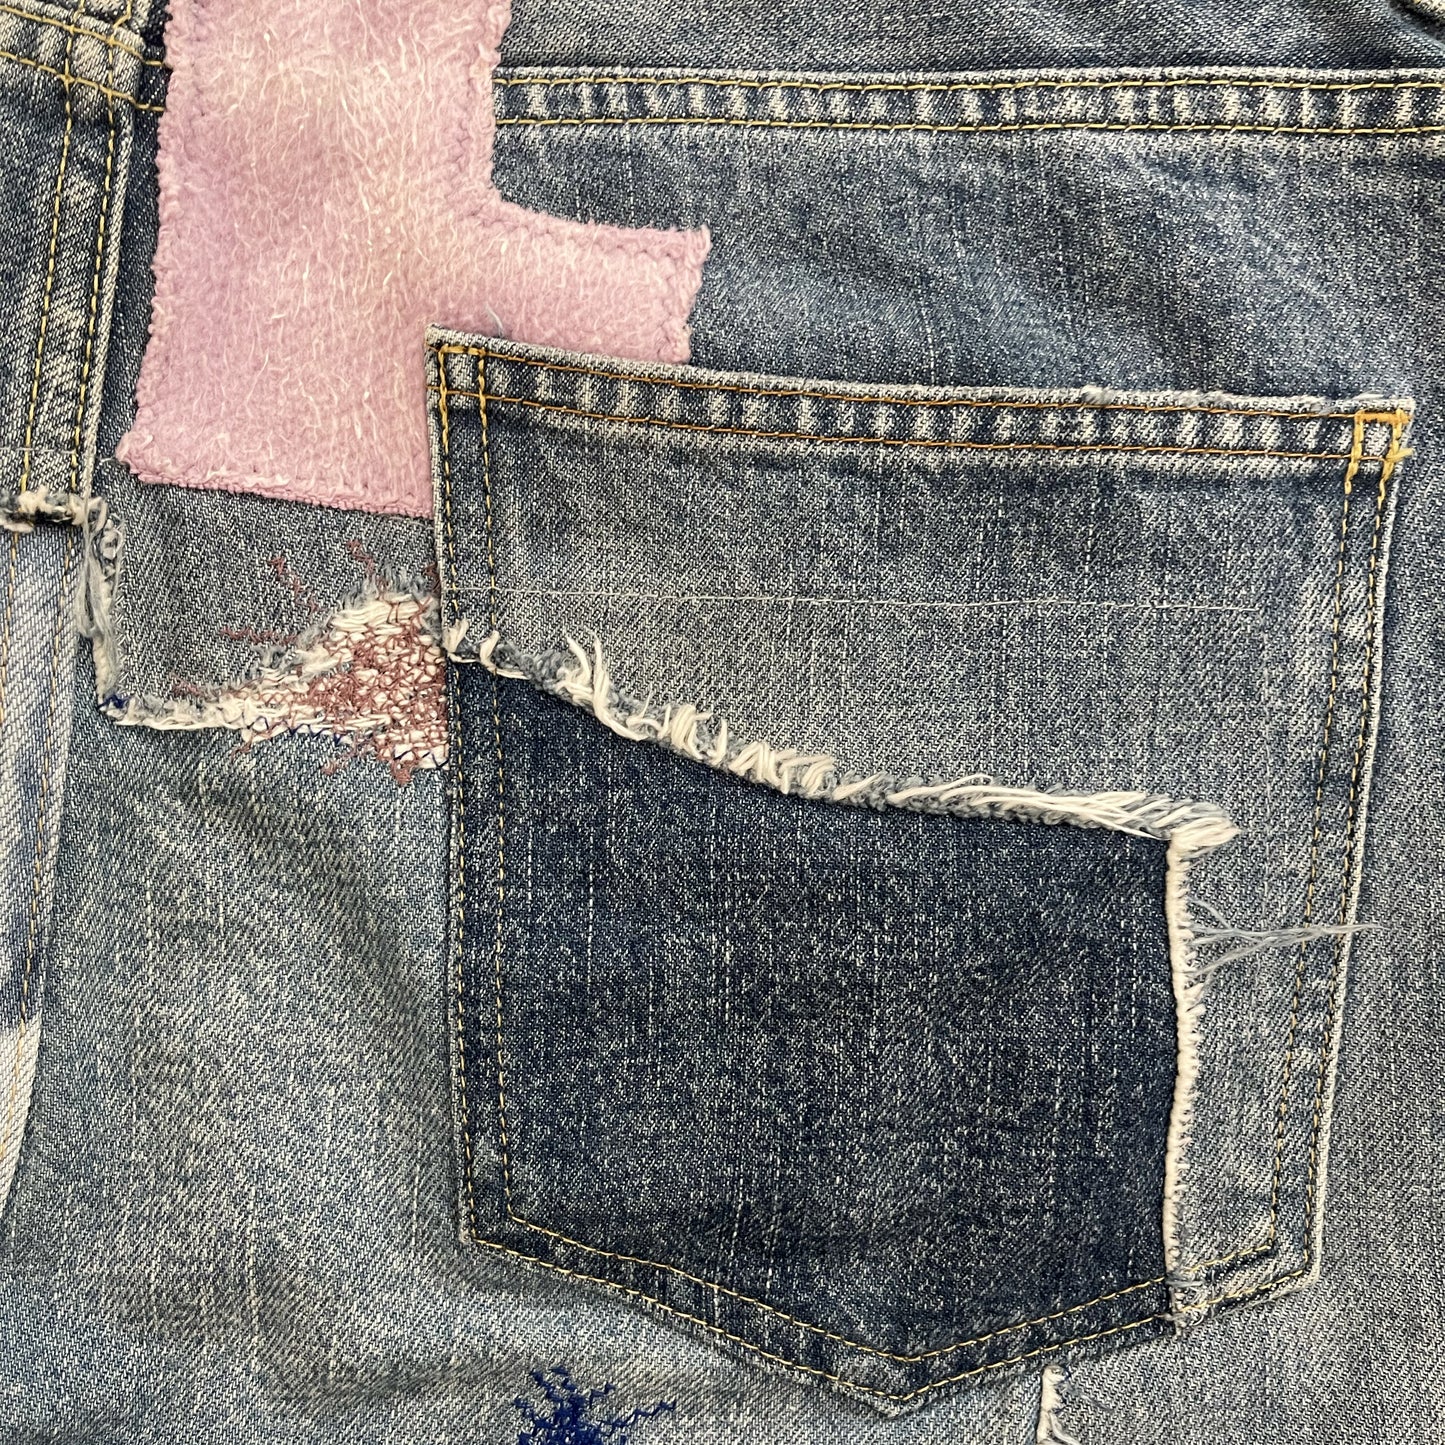 Kapital 14oz Okabilly Gypsy Patchwork Jeans